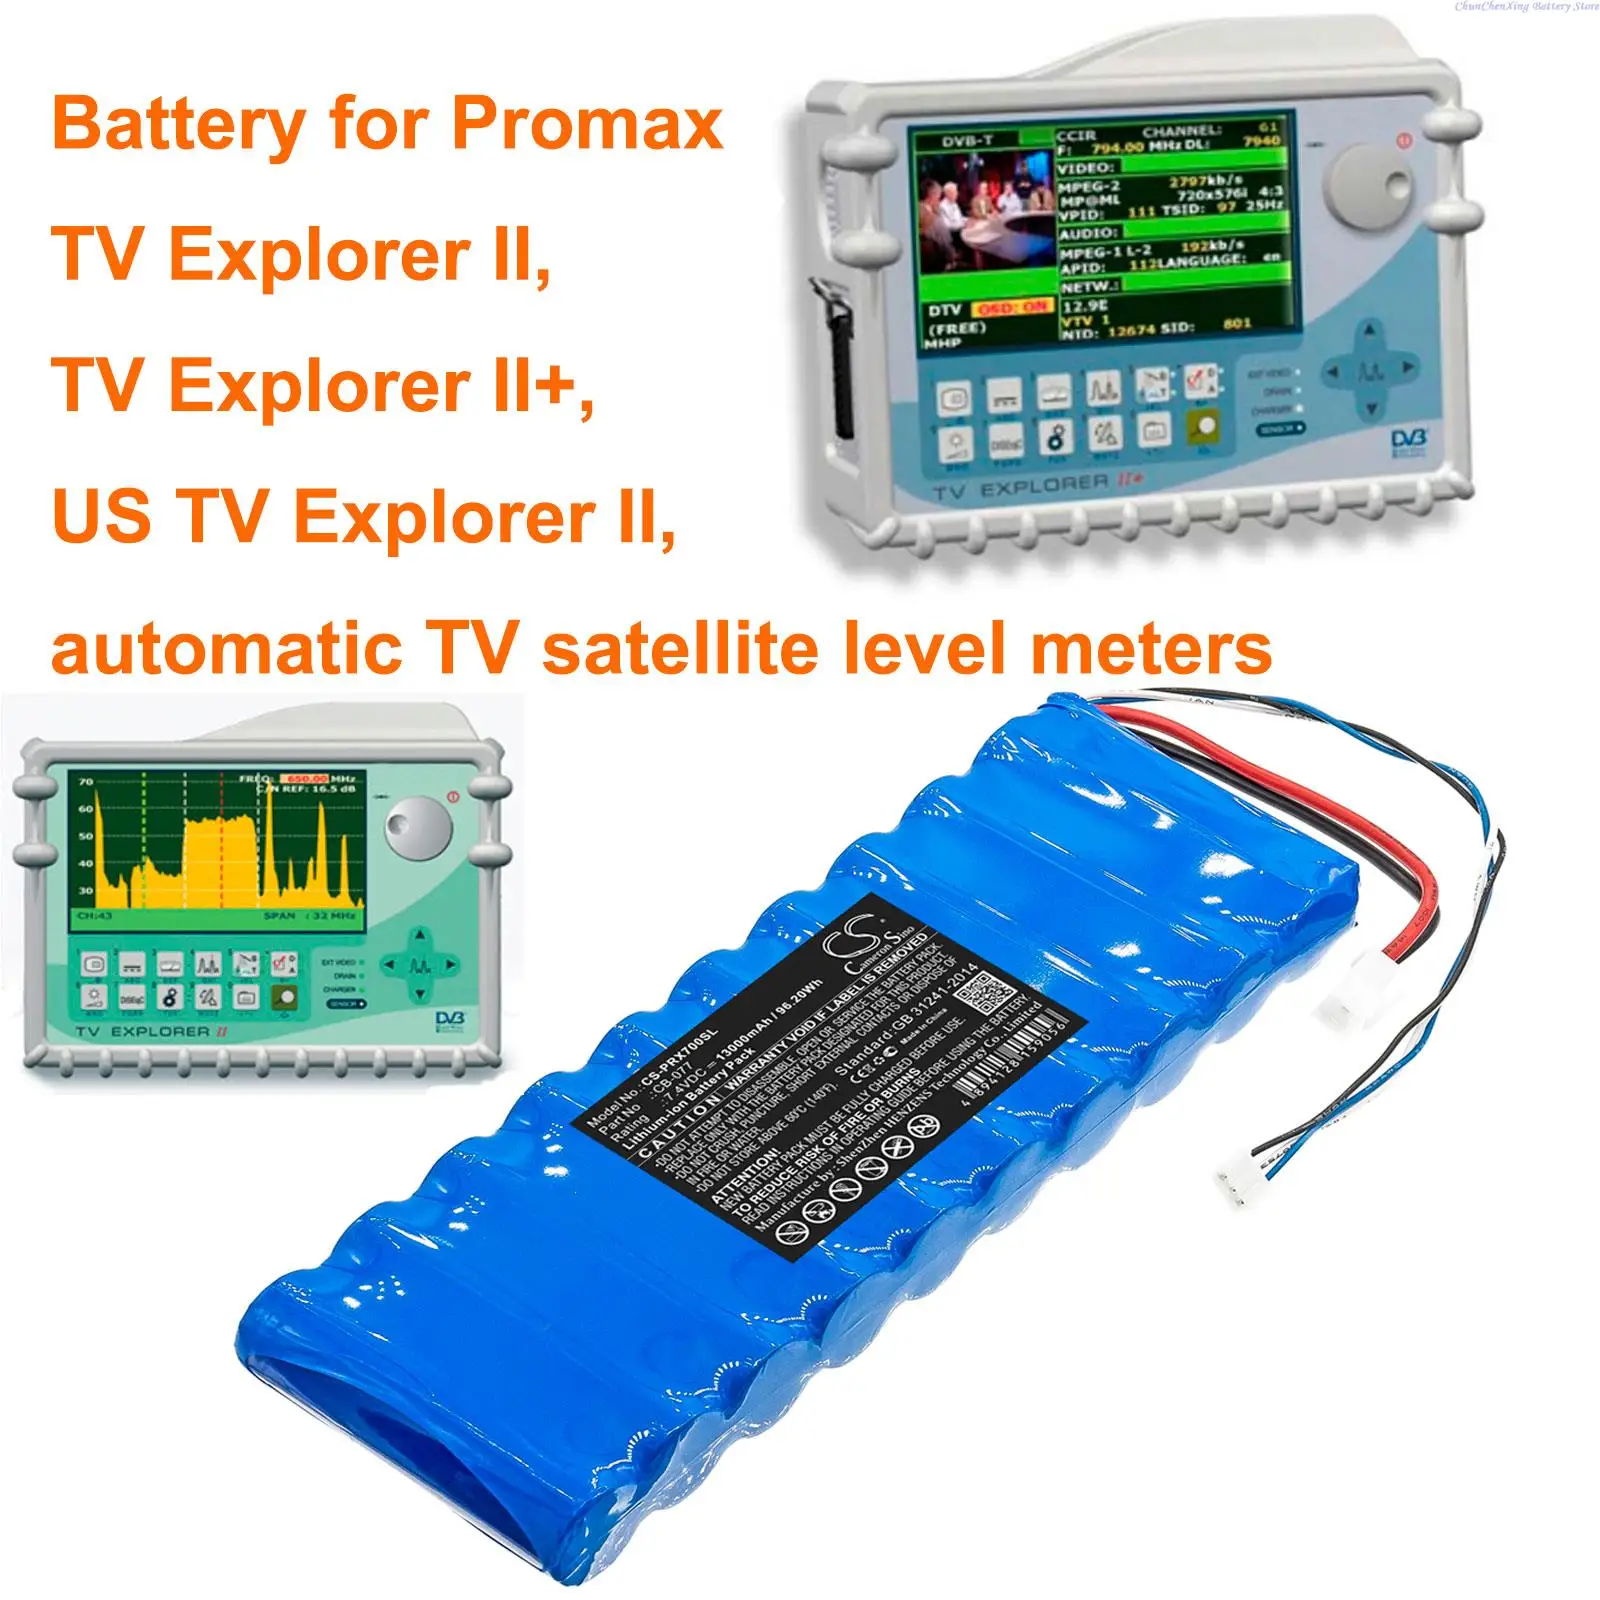 

OrangeYu 13000mAh Battery for Promax TV Explorer II, TV Explorer II+, US TV Explorer II, automatic TV satellite level meters